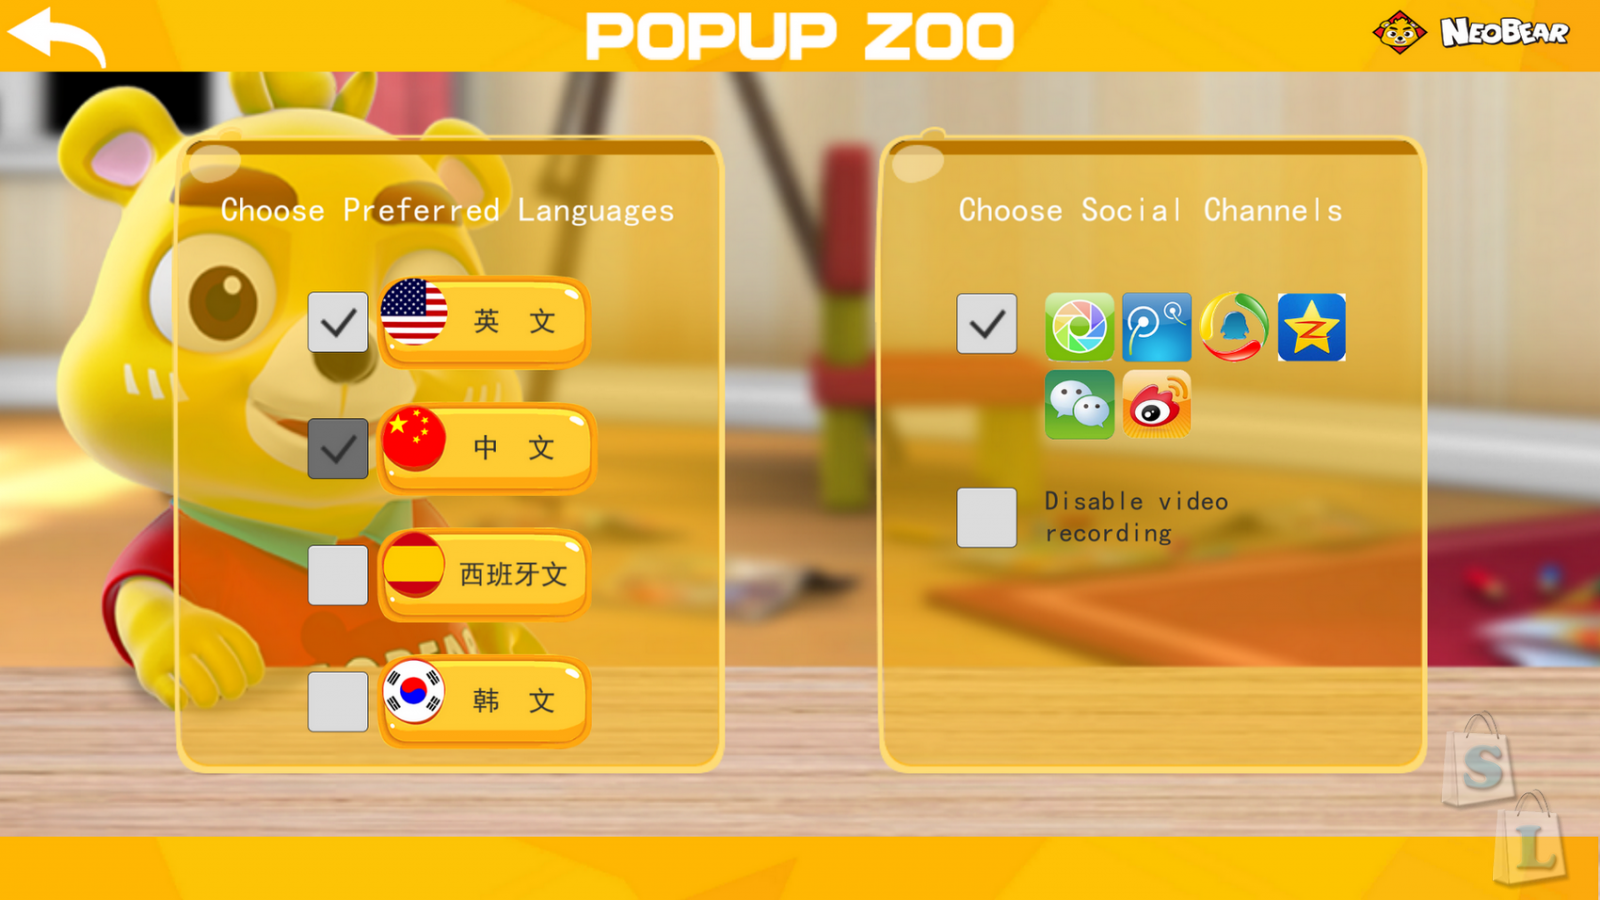 GearBest: 3D зоопарк NEOBEAR карточки с животными изучаем английский язык с детьми